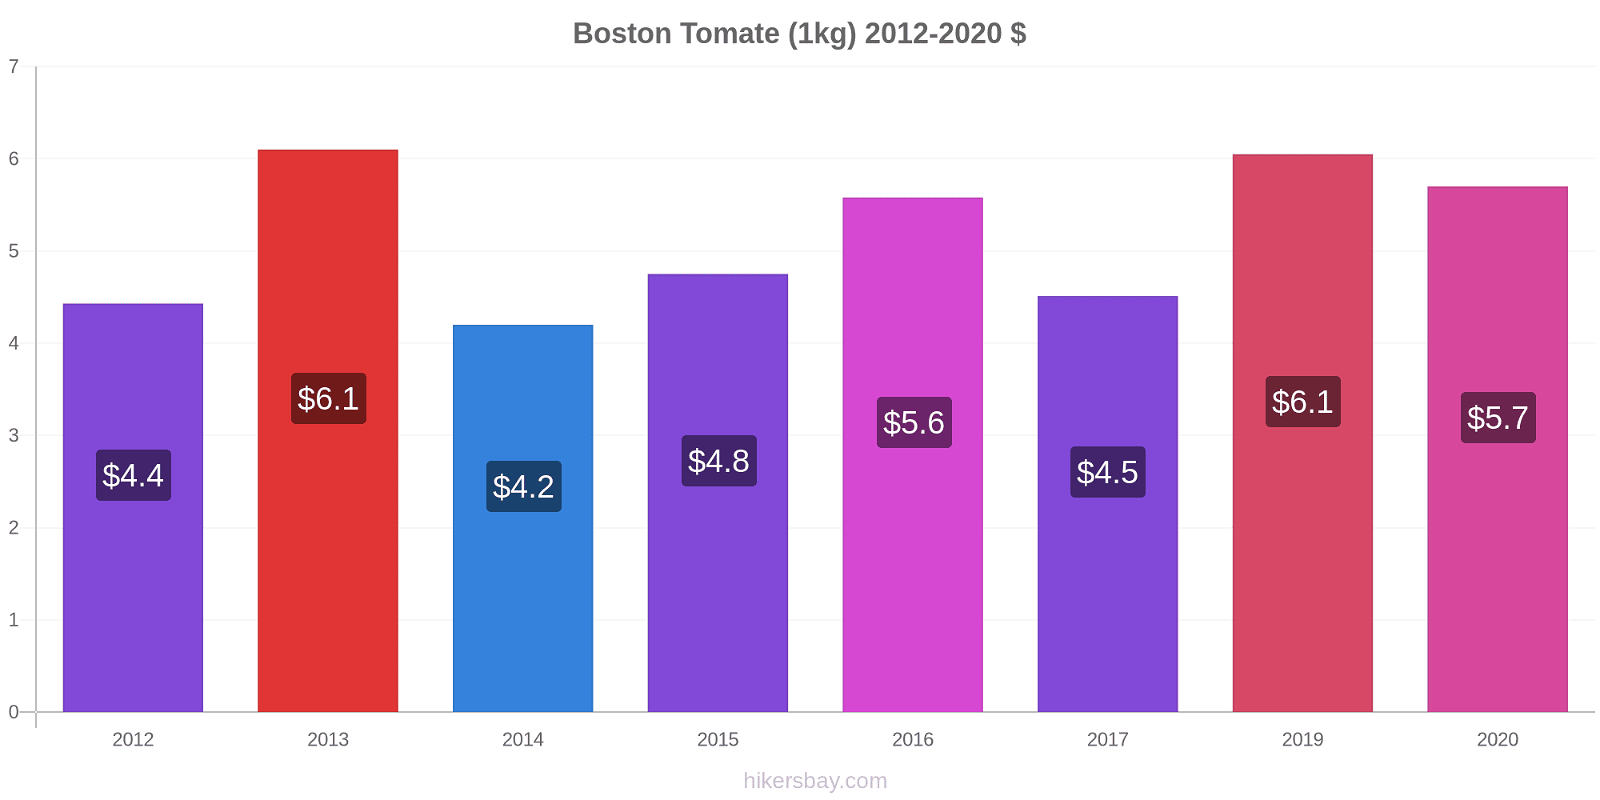 Boston cambios de precios Tomate (1kg) hikersbay.com